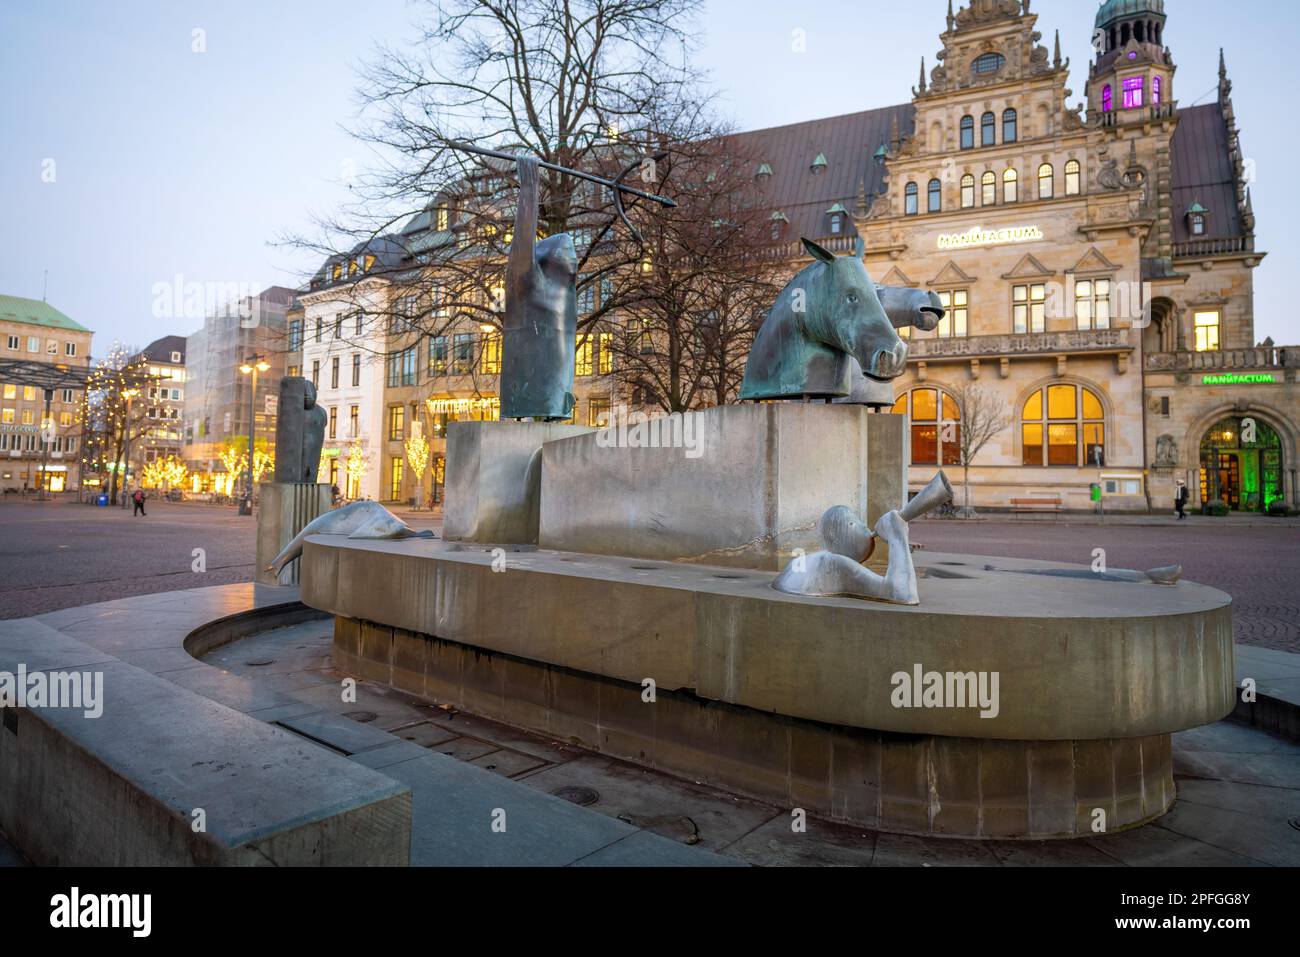 Neptune Fountain (Neptunbrunnen) at Domshof Square - Bremen, Germany Stock Photo